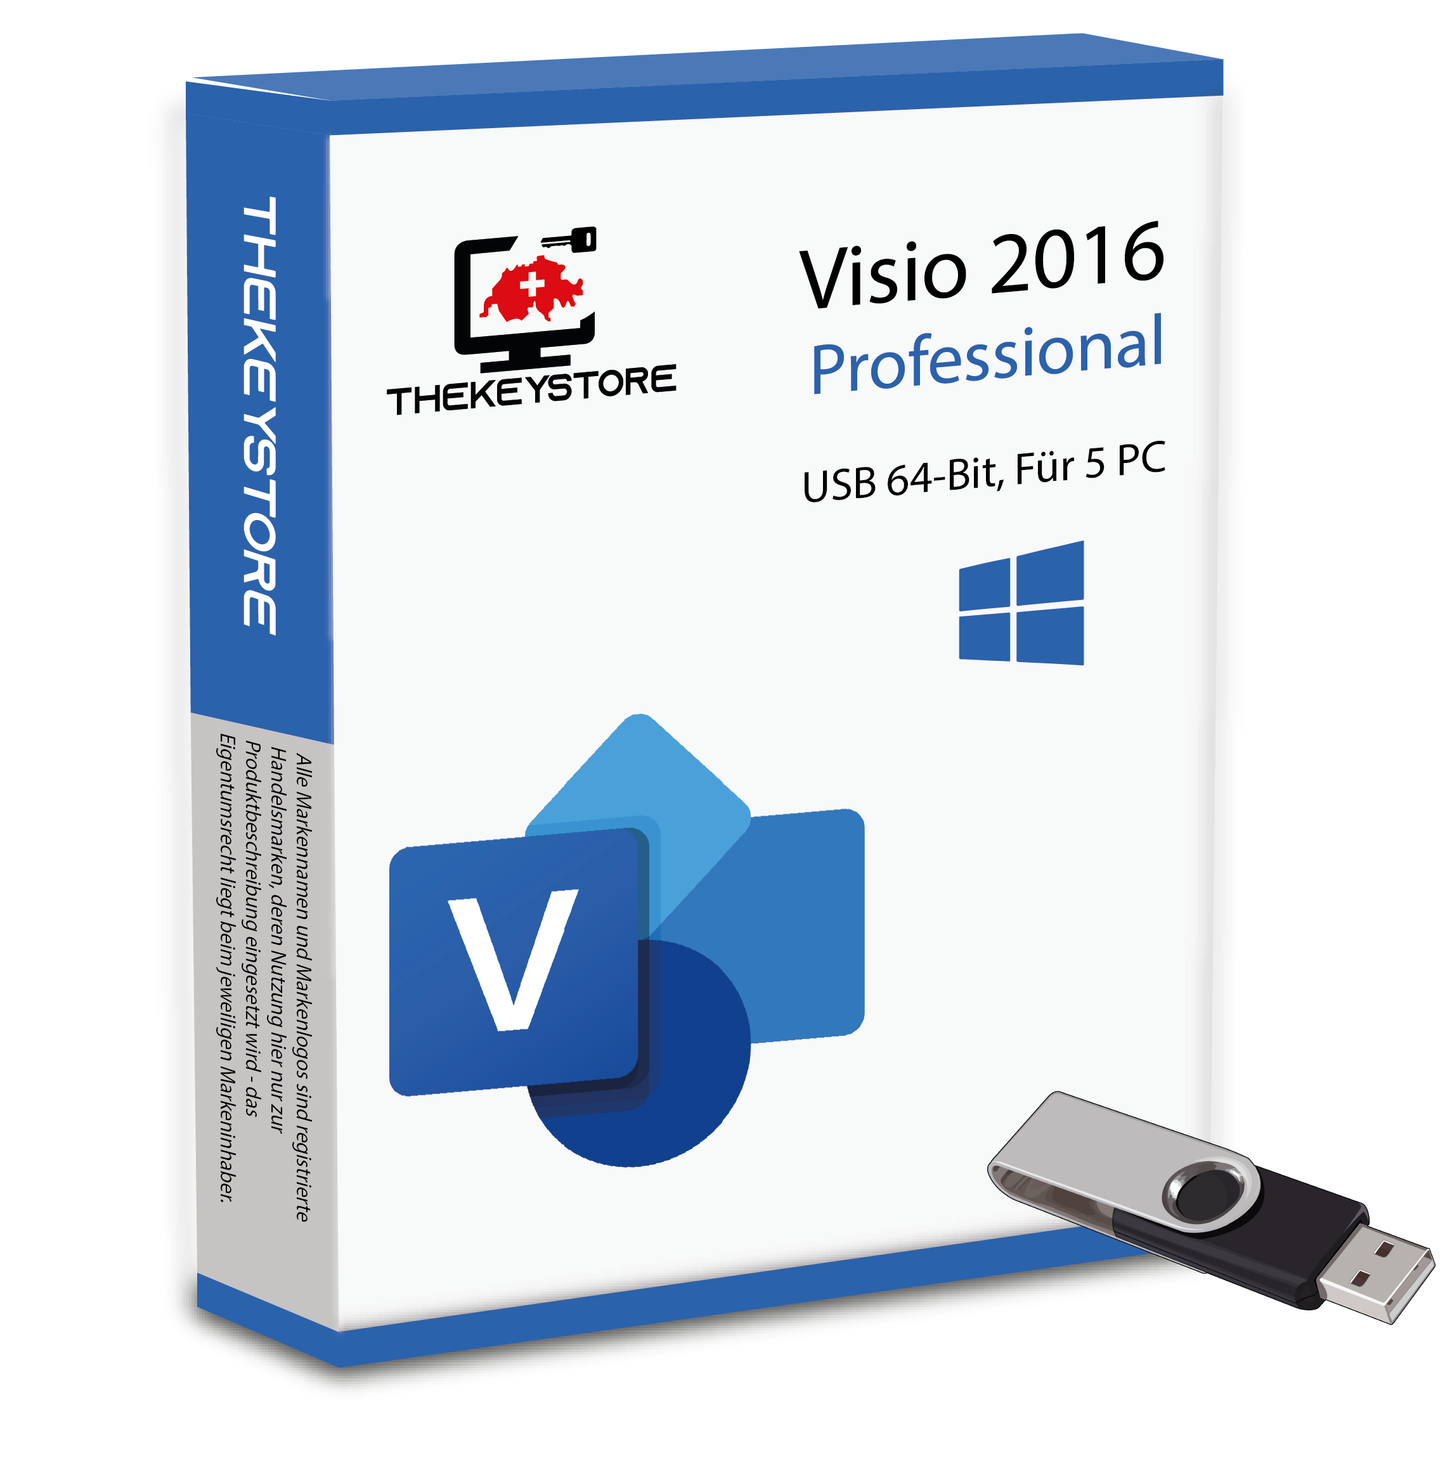 Microsoft Visio 2016 Professional - Für 5 PC - TheKeyStore Schweiz